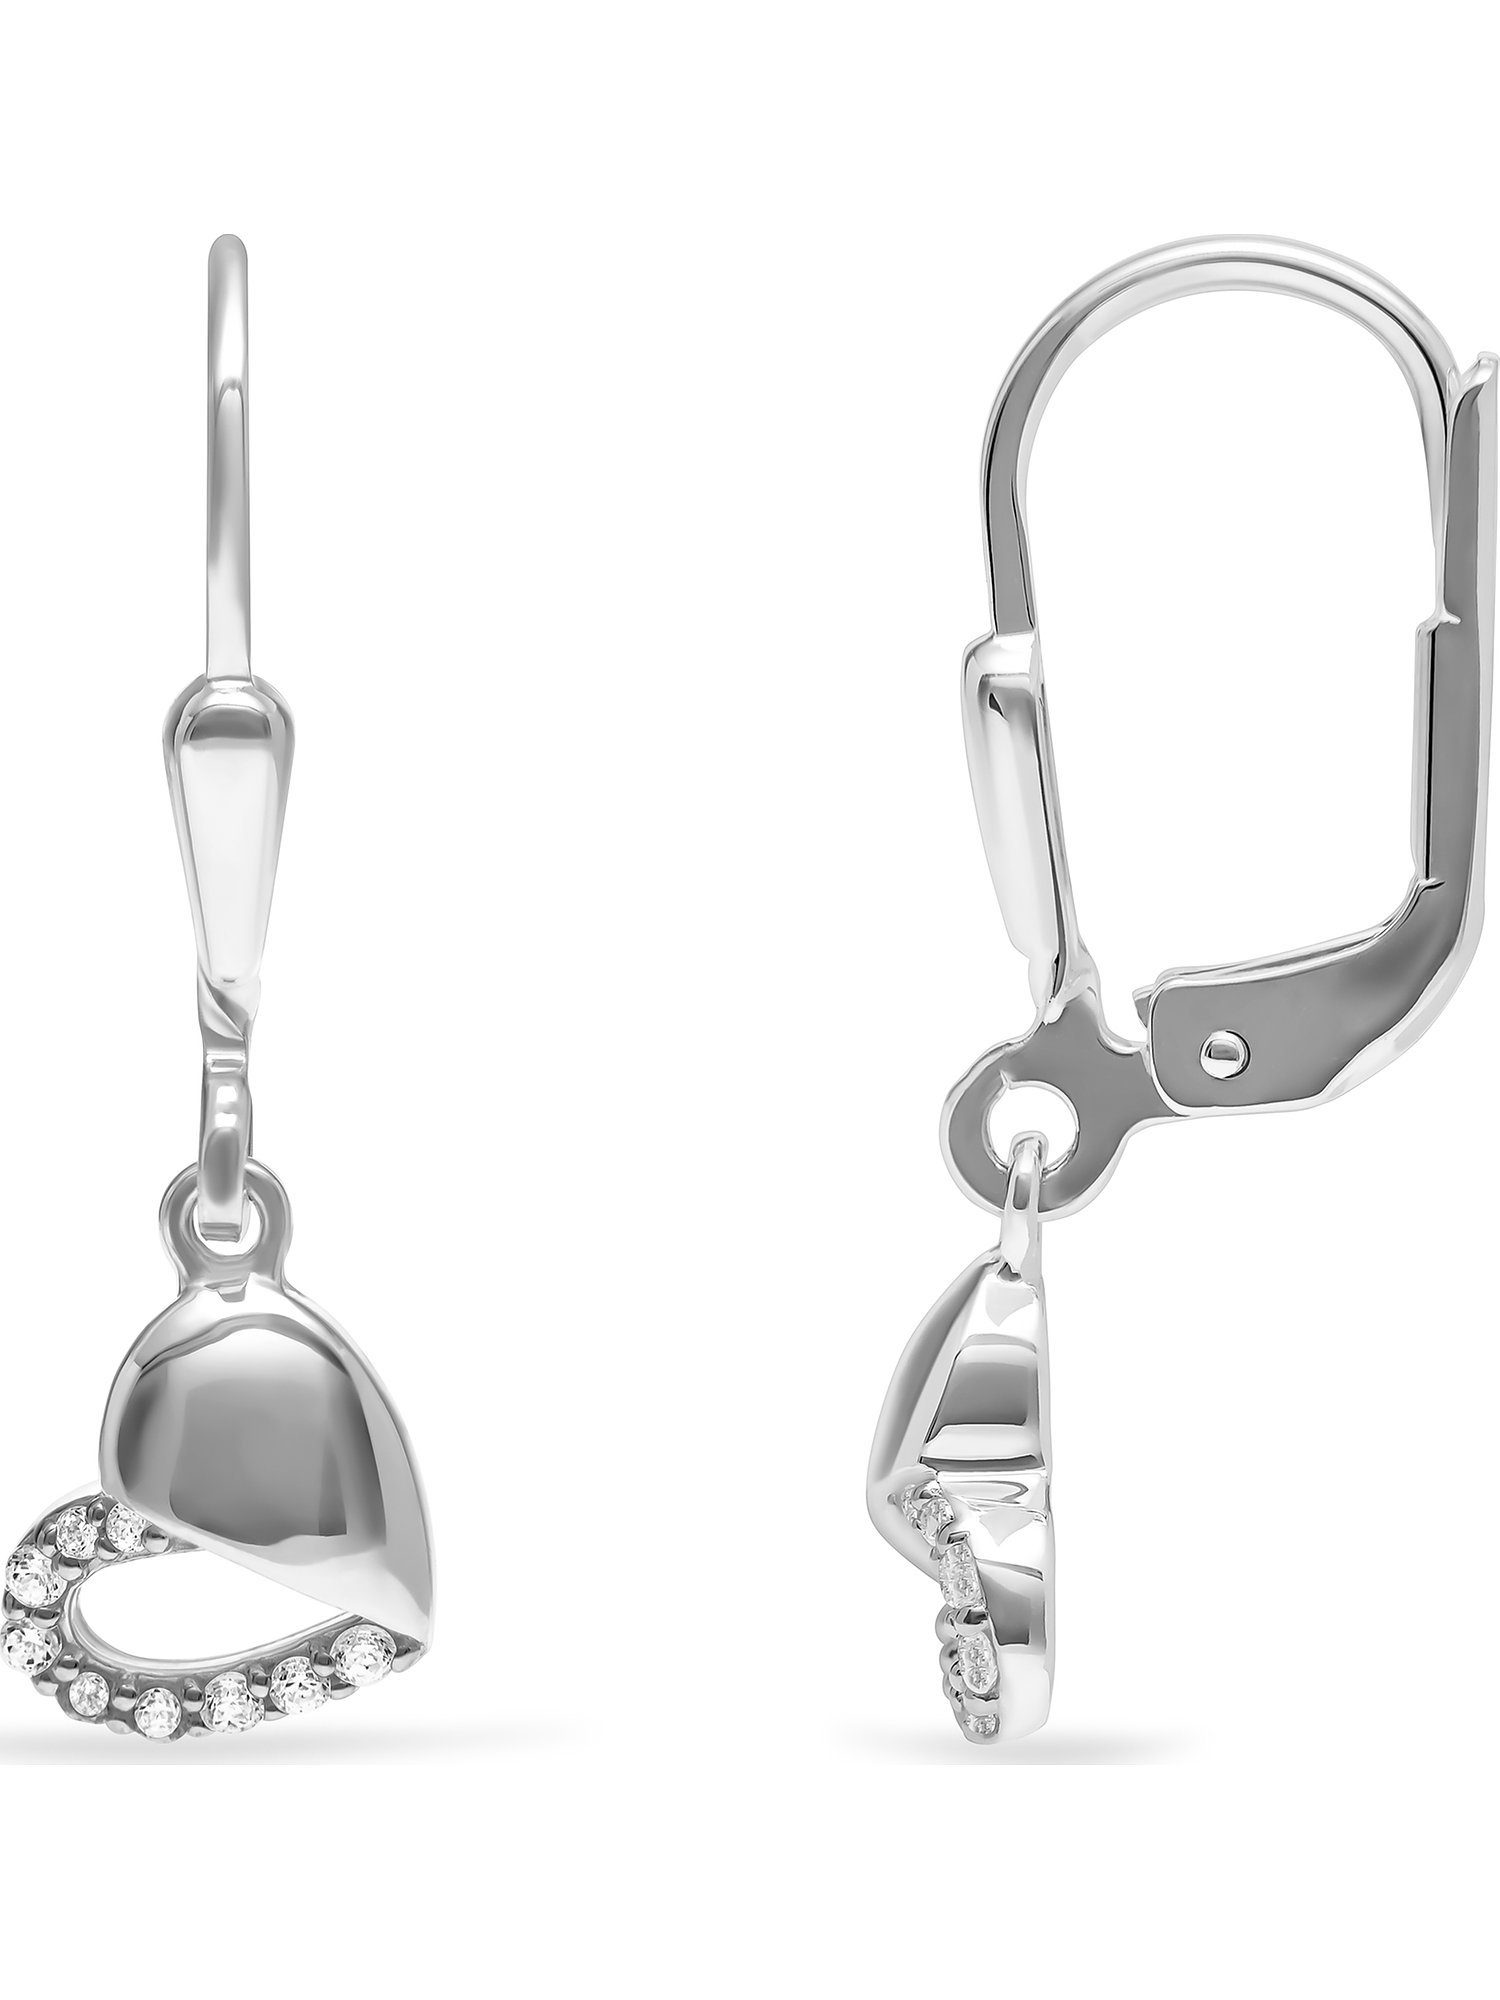 FAVS 18 Paar Silber Zirkonia Ohrhänger Mädchen-Ohrhänger FAVS 925er